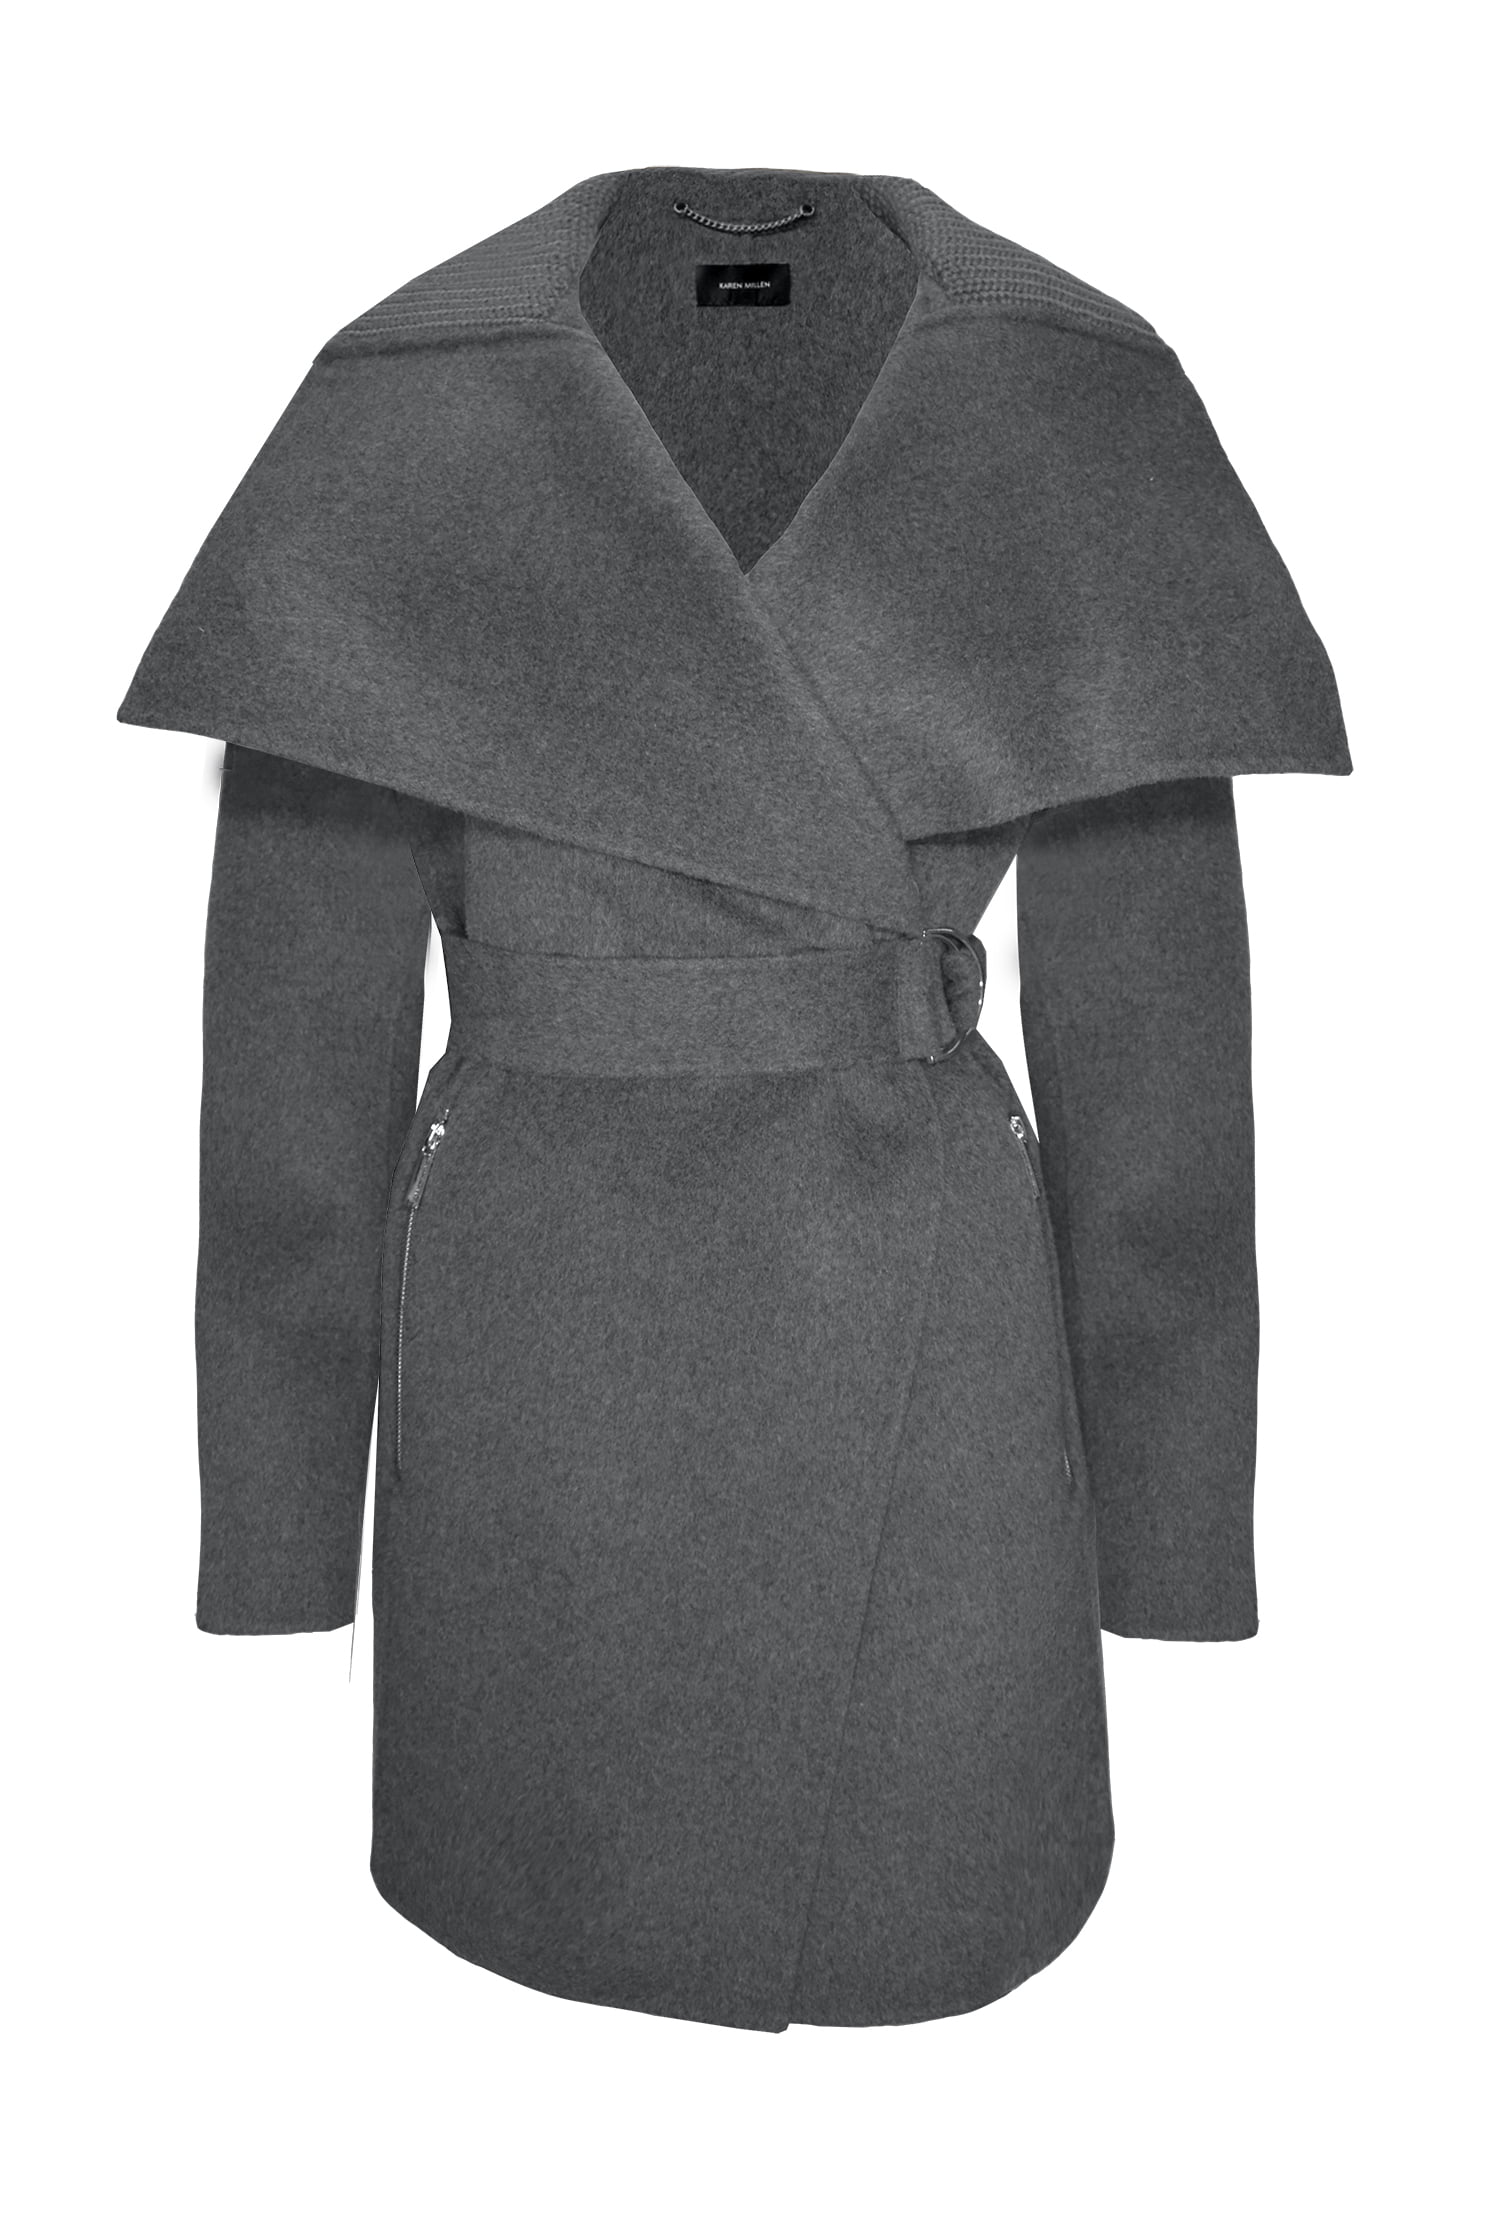 8 Karen Millen Womens Charcoal Gray Wool Wrap Coat 